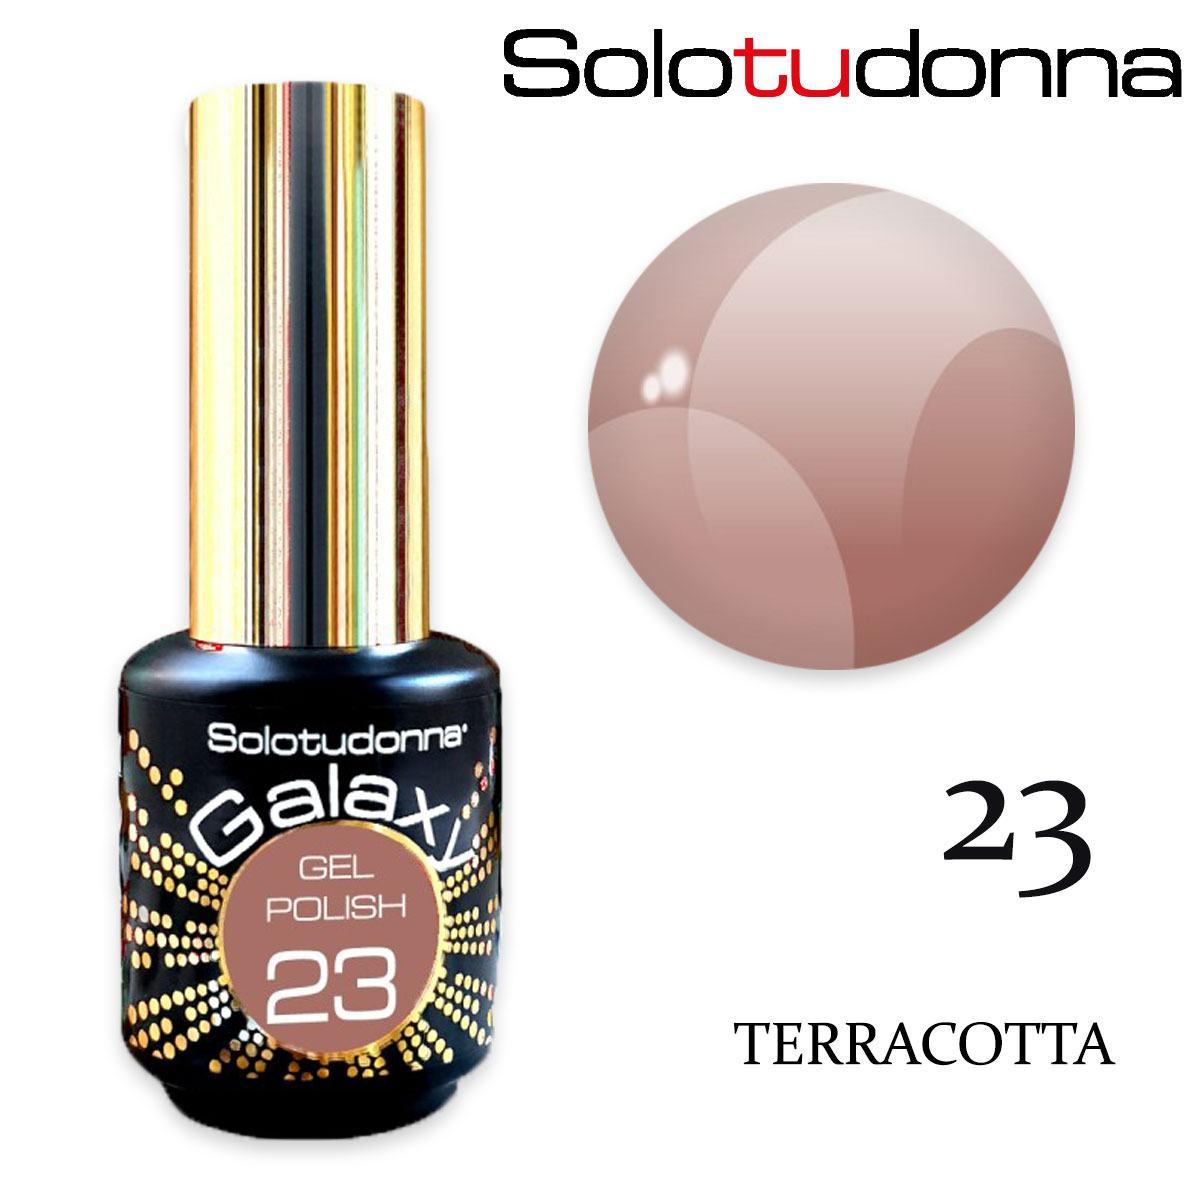 Solo tu donna gel polish galaxy 6ml terracotta n.23